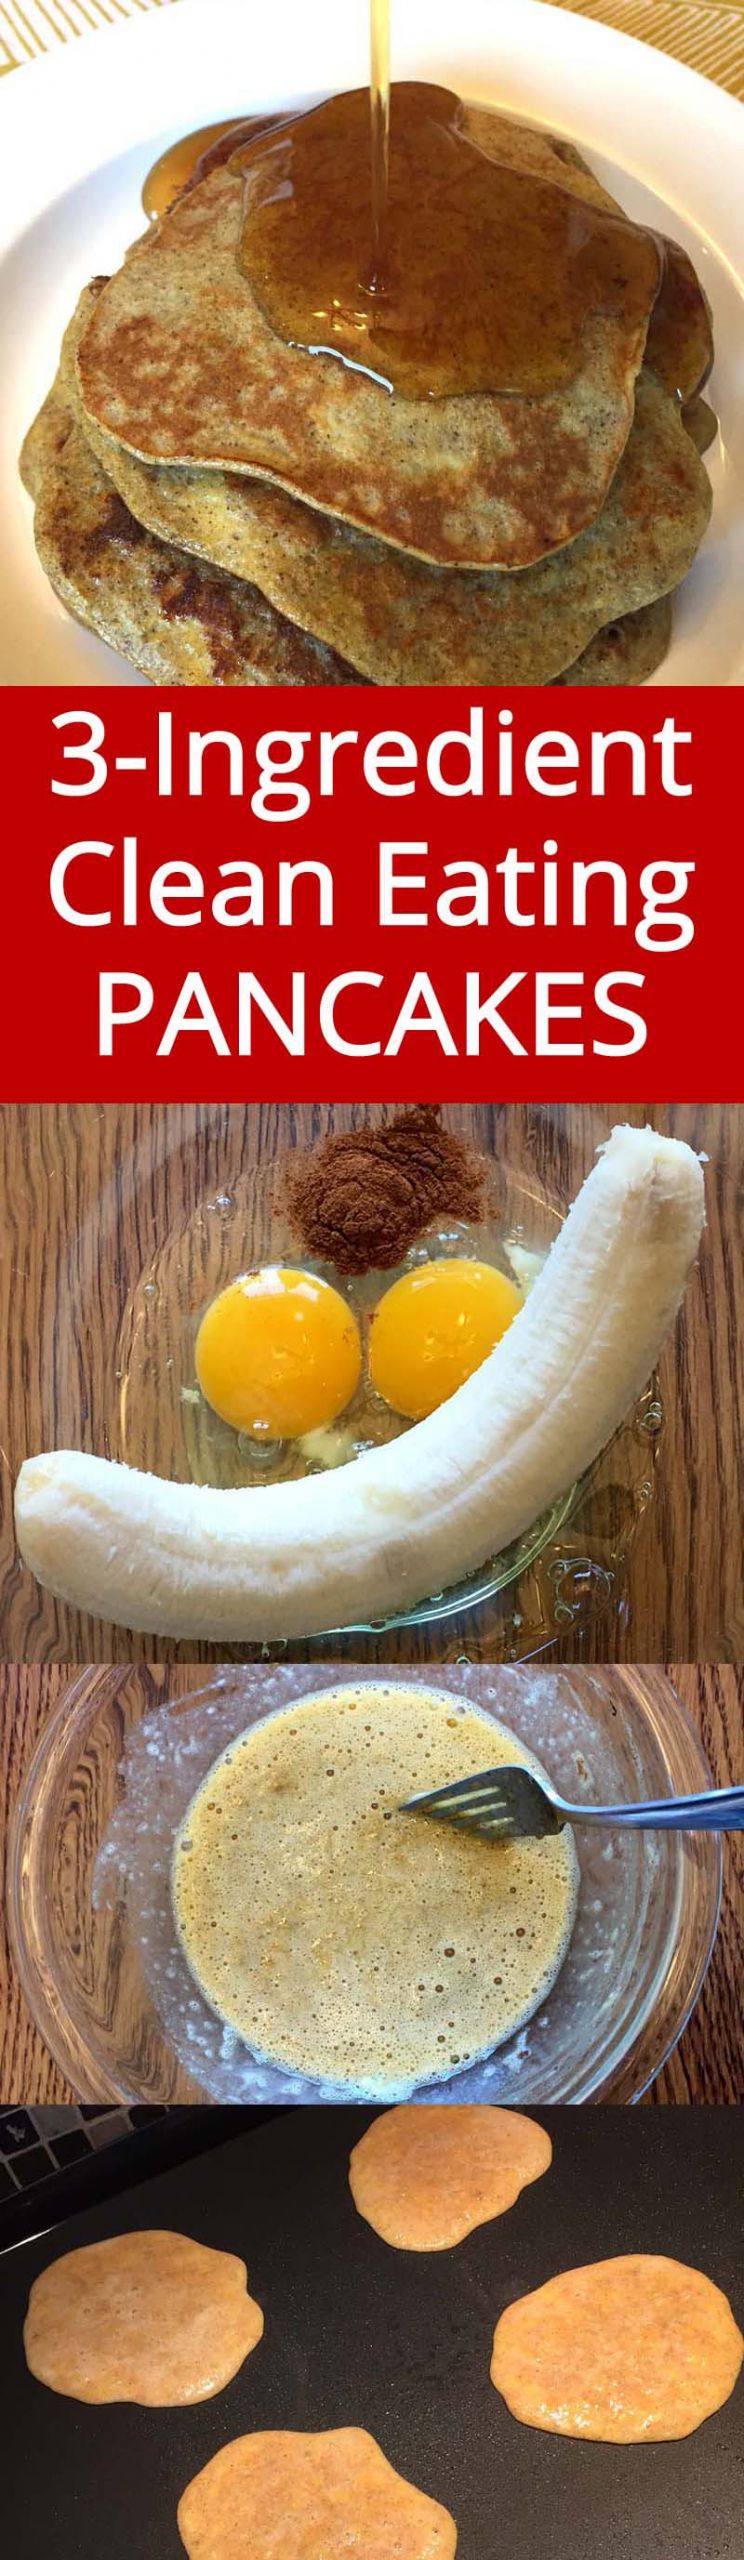 3 Ingredient Banana Pancakes
 Healthy 3 Ingre nt Banana Pancakes – Gluten Free Clean